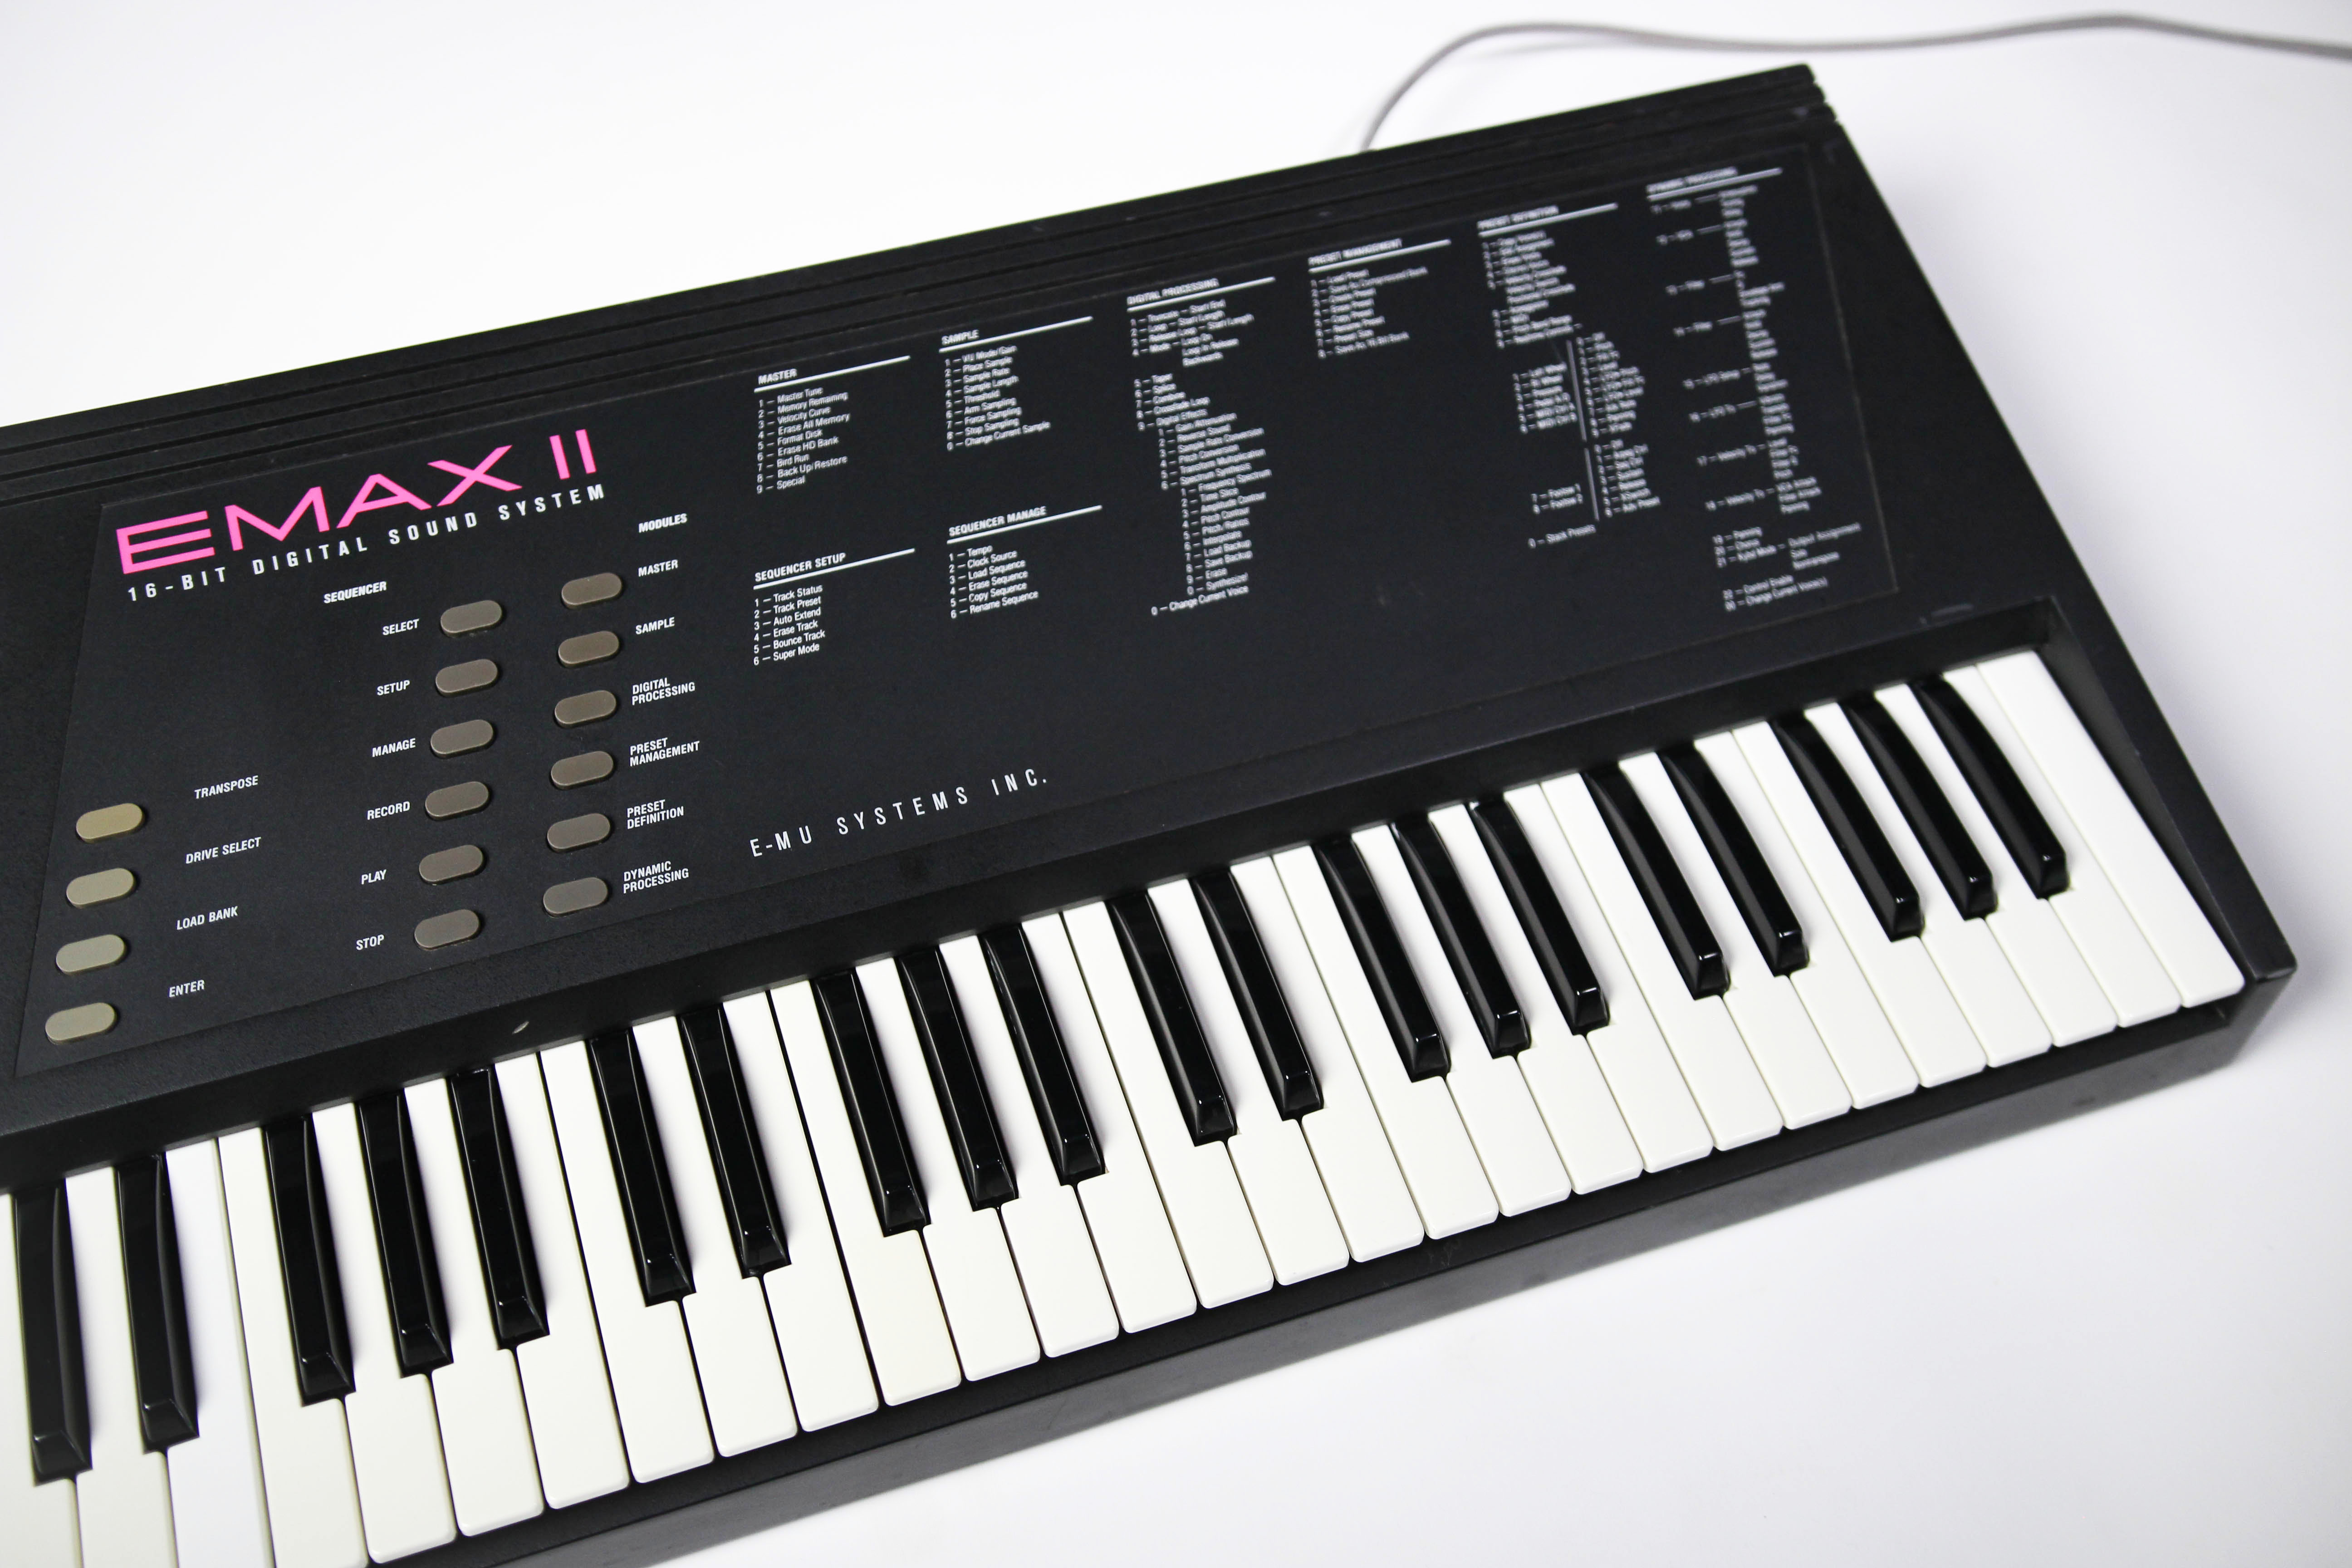 E-mu Emax II keyboard